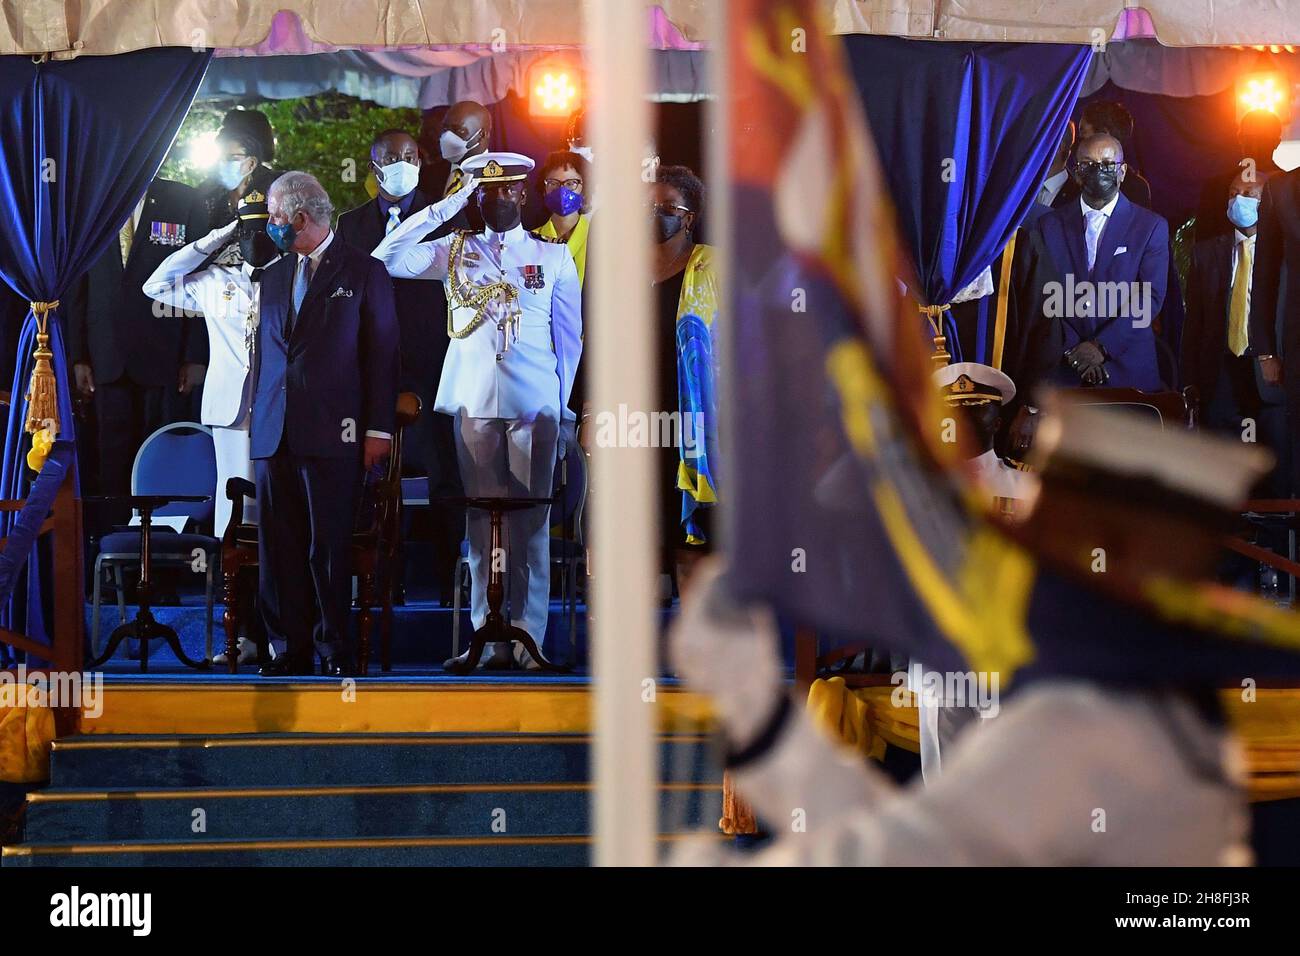 Der Prinz von Wales schaut weg, während die britische Royal Standard-Flagge bei der Eröffnungszeremonie des Präsidenten herabgelassen wird, um die Geburt einer neuen republik in Barbados, Bridgetown, Barbados, zu feiern. Bilddatum: Montag, 29. November 2021. Stockfoto